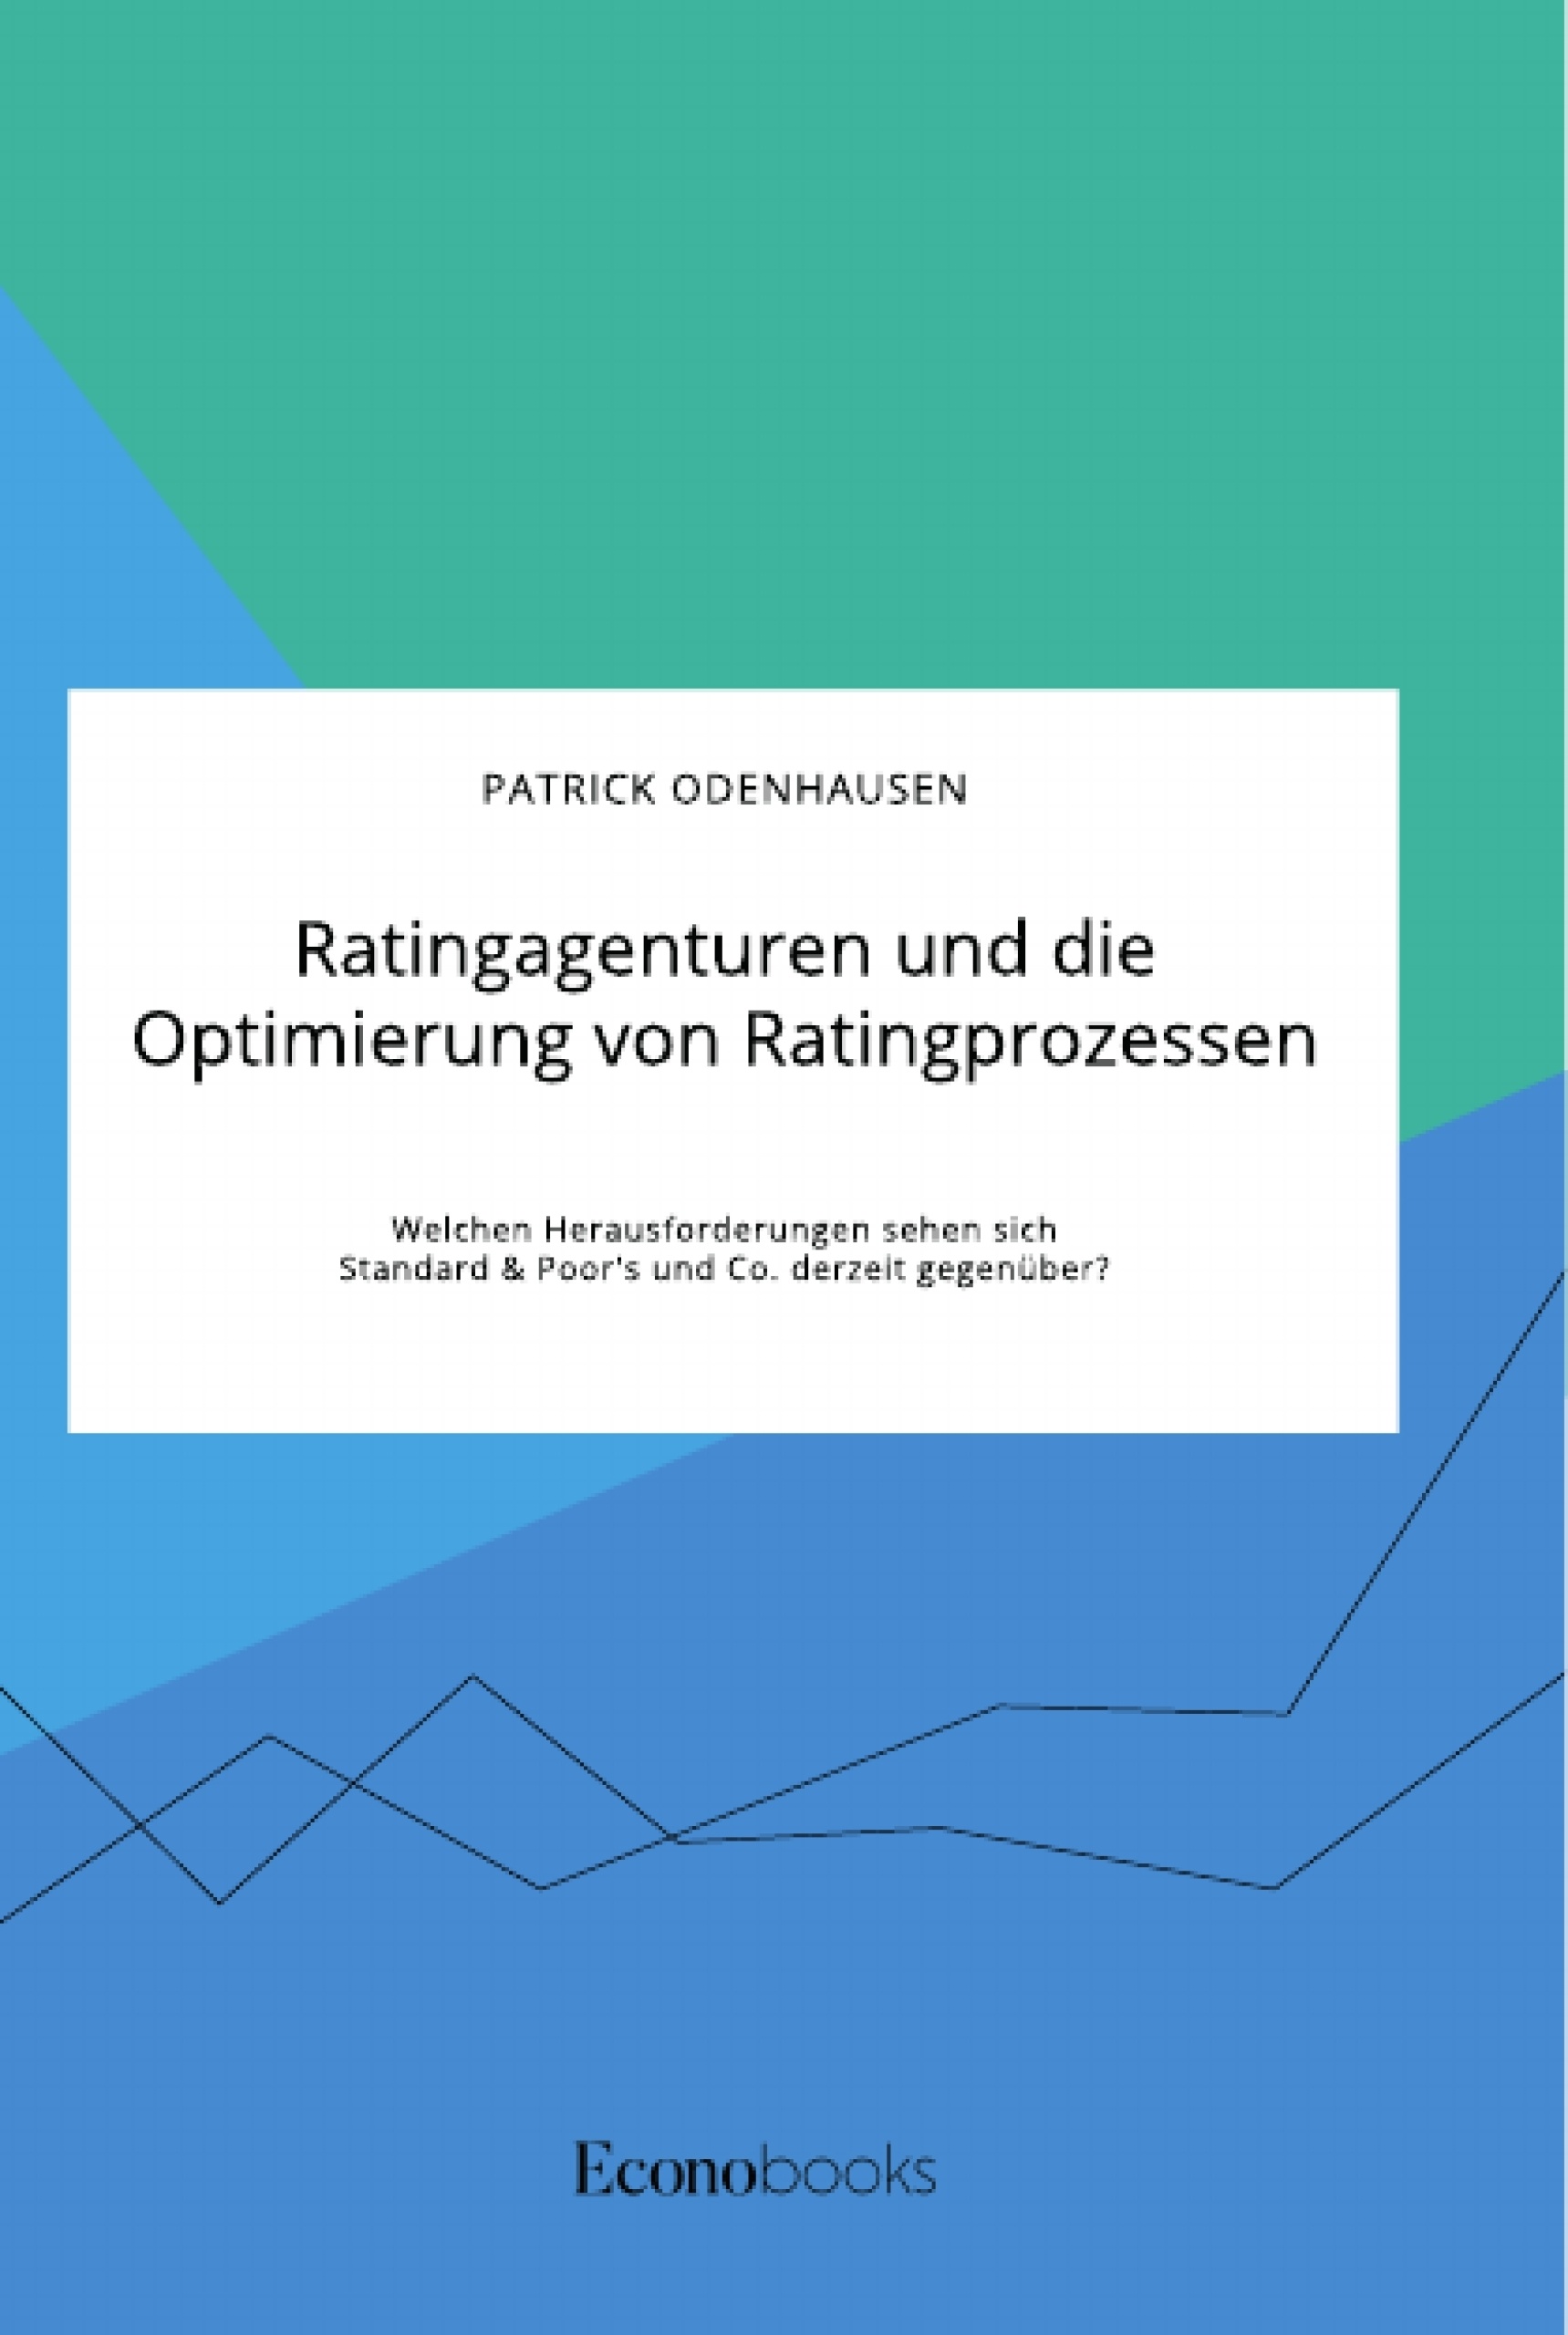 Title: Ratingagenturen und die Optimierung von Ratingprozessen. Welchen Herausforderungen sehen sich Standard & Poor's und Co. derzeit gegenüber?